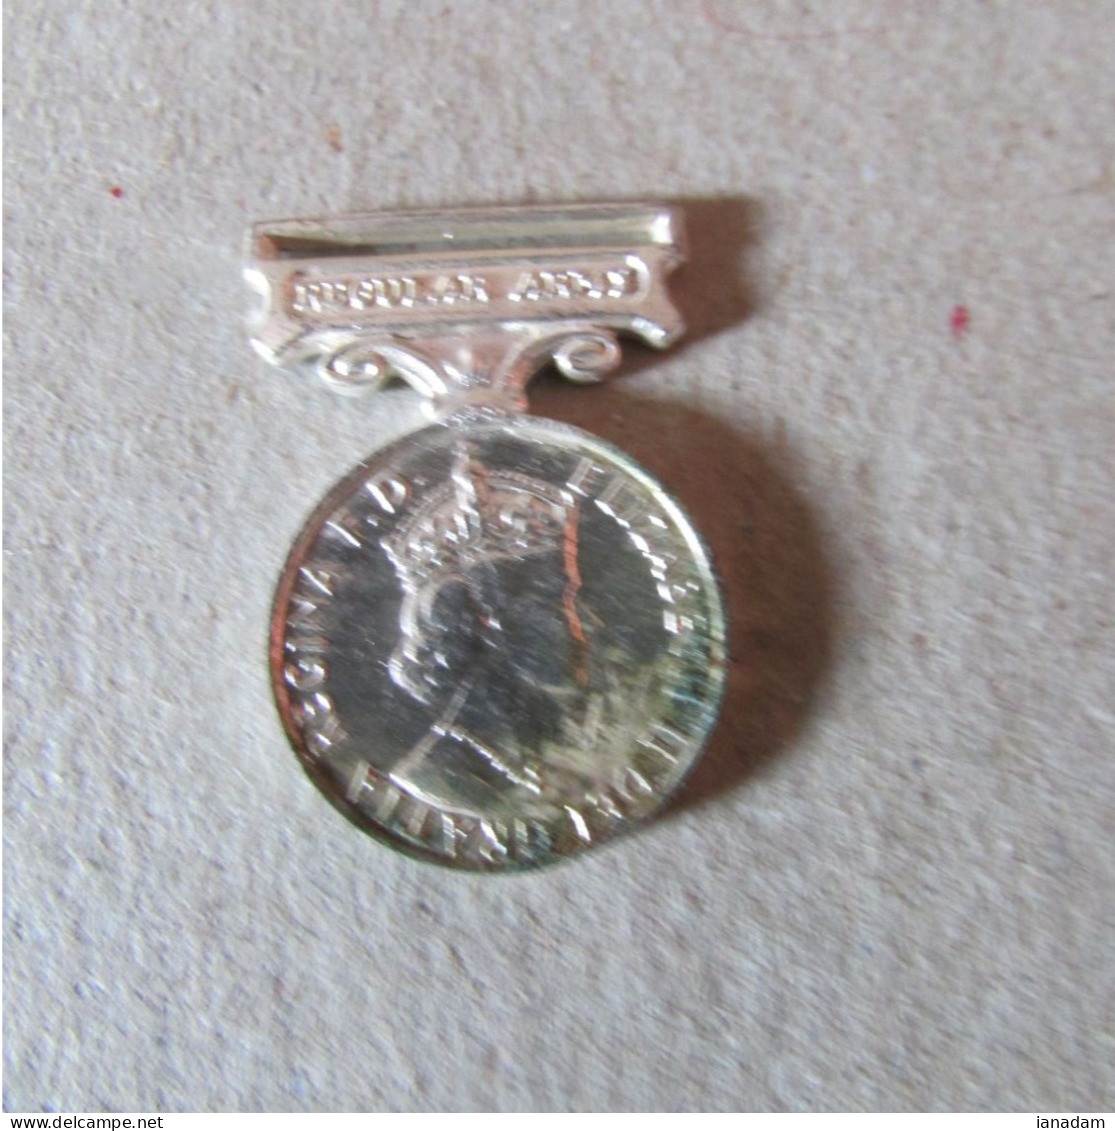 Miniature British LSGC Medal - Grande-Bretagne